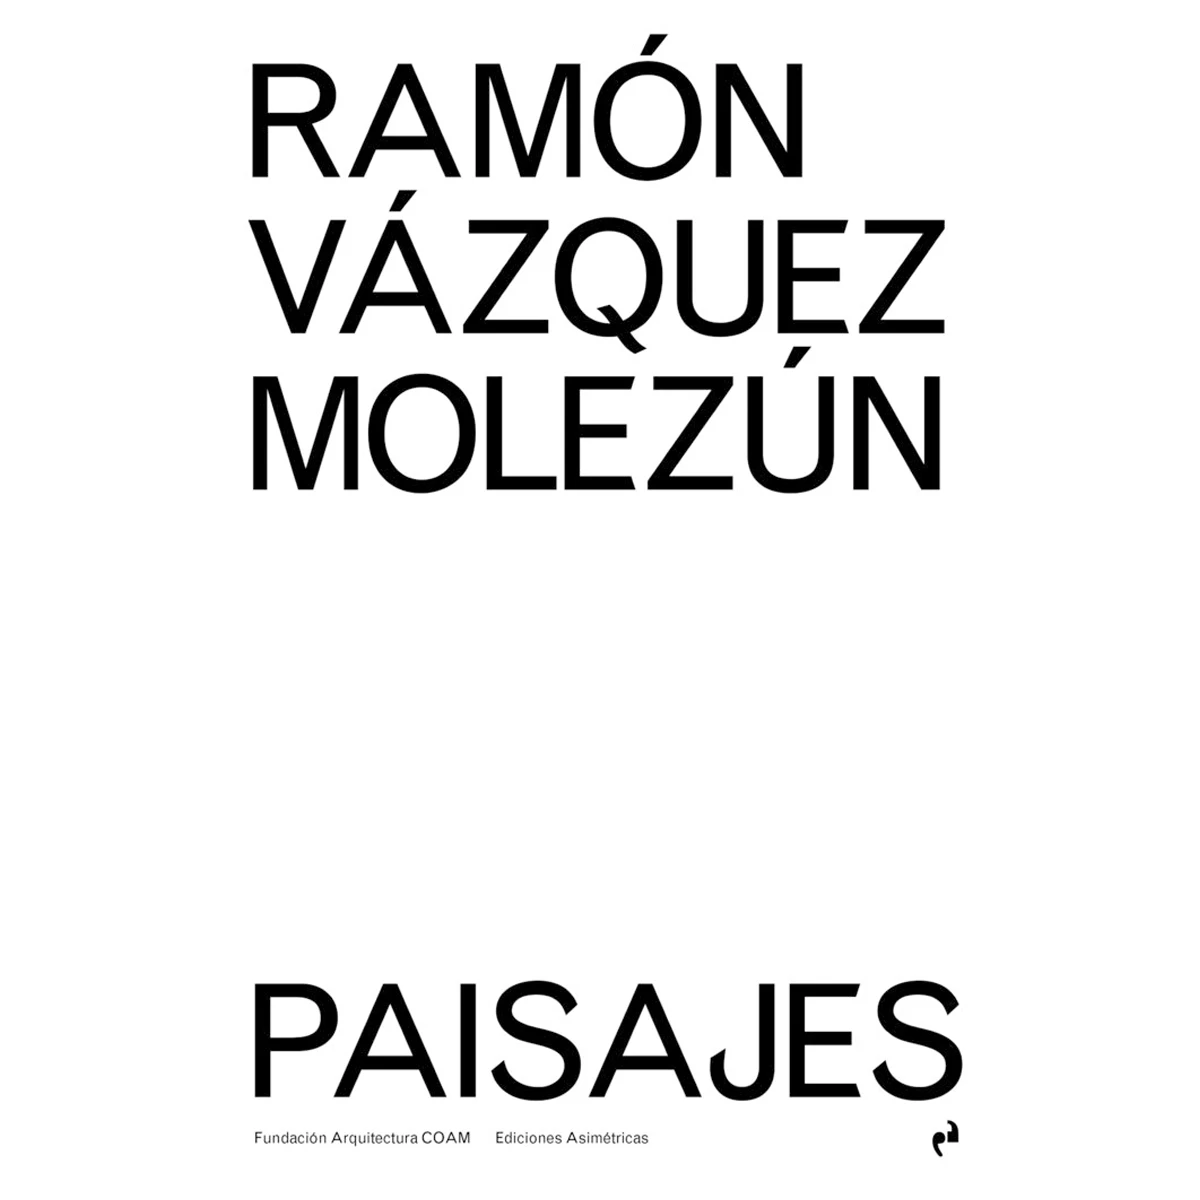 Ramón Vázquez Molezún. Paisajes